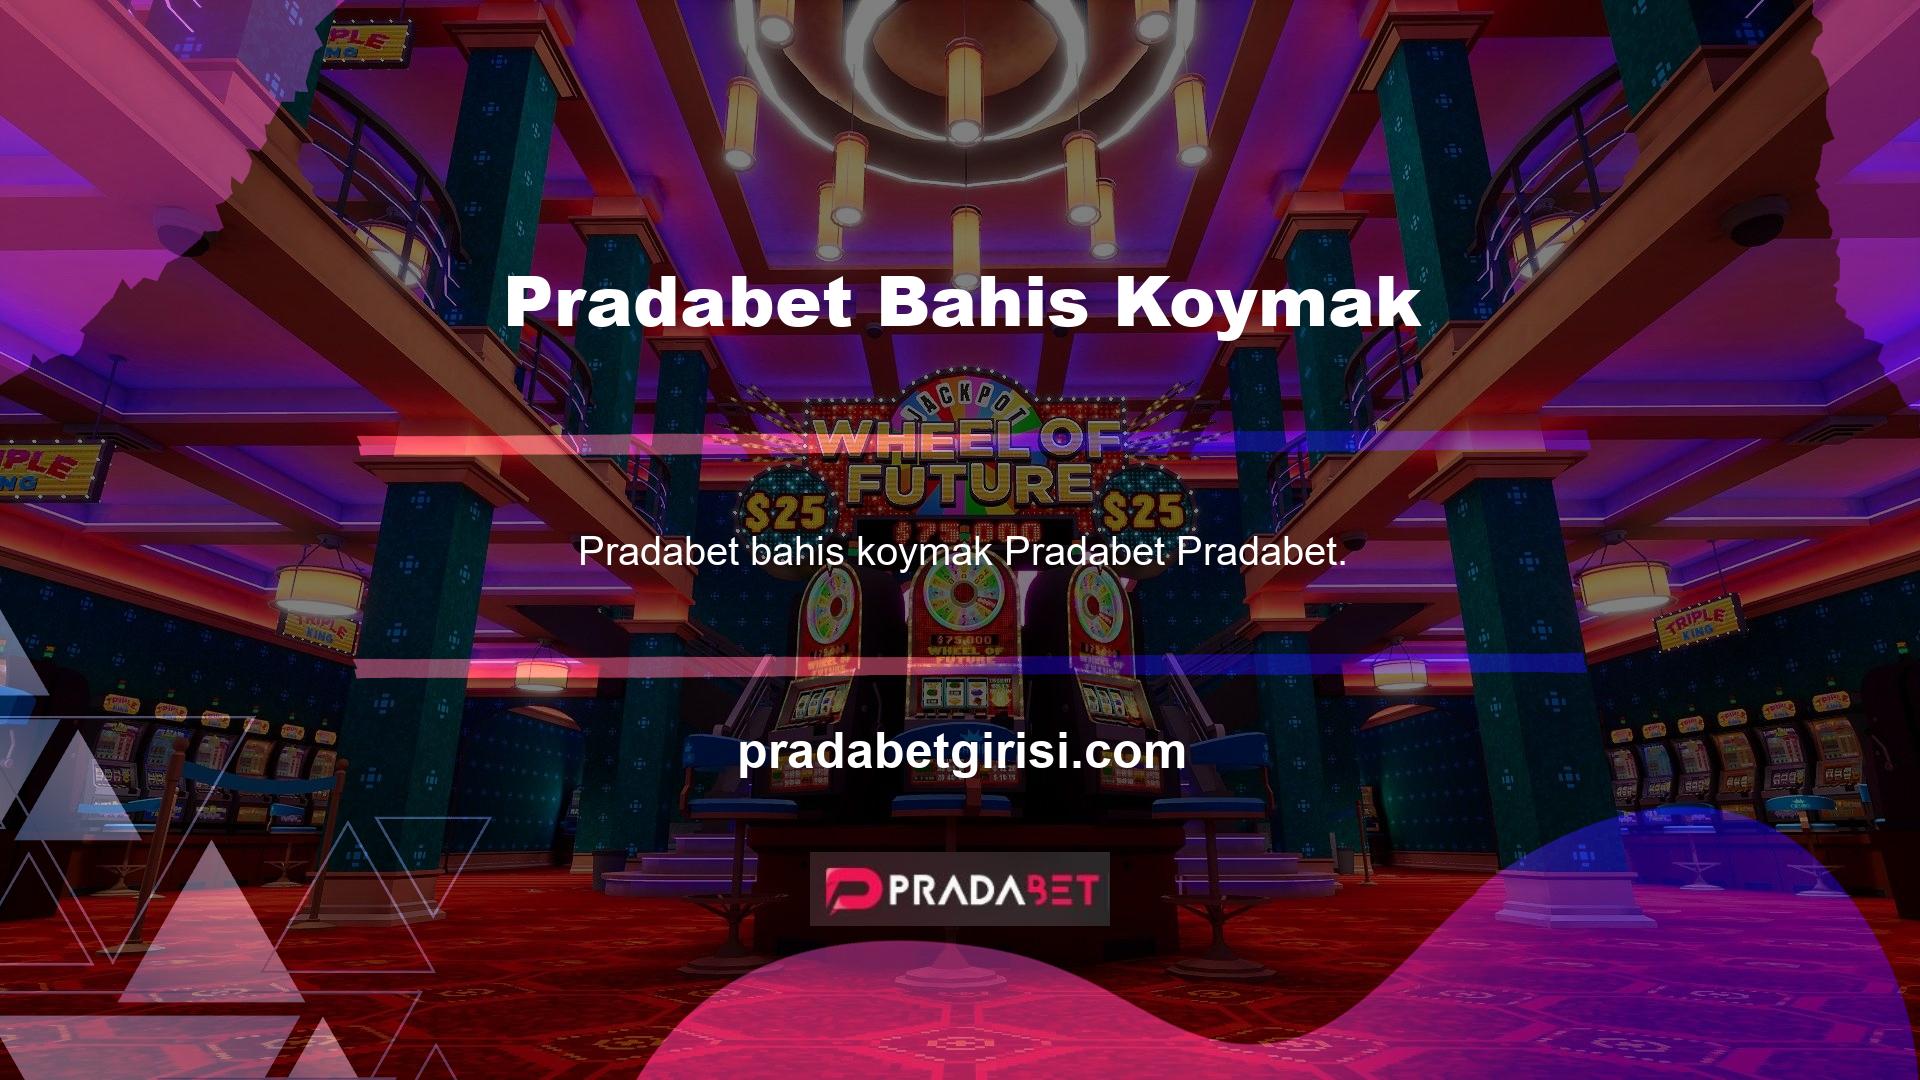 com, oyuncuların giriş yapmasını kolaylaştırmak için web sitesinde Pradabet Türkiye giriş adresini vermiştir